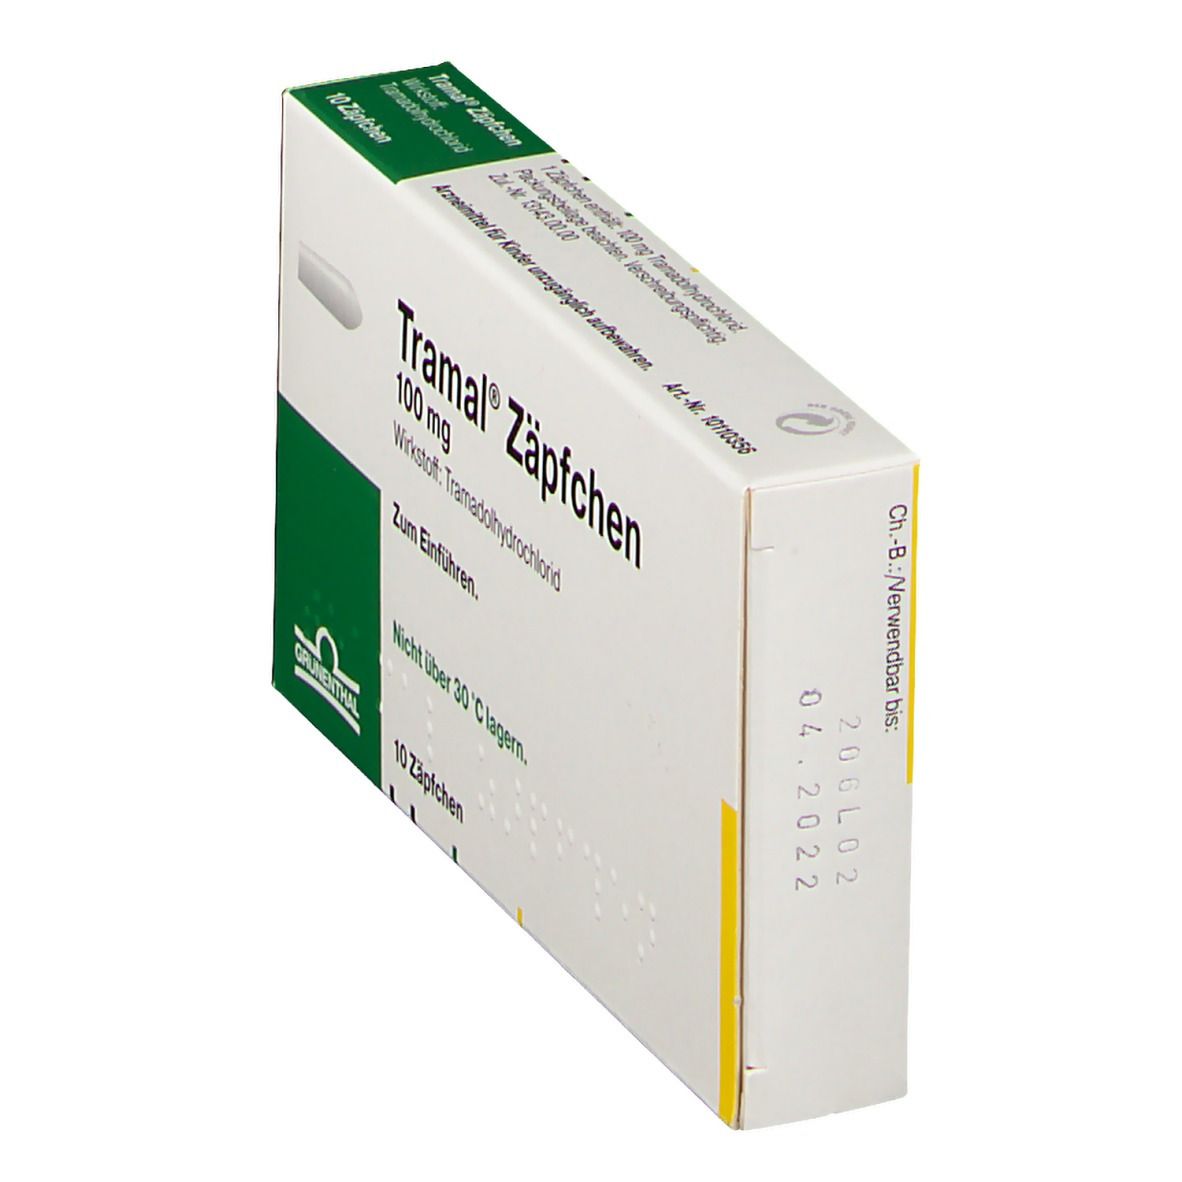 Tramal® Zäpfchen 100 mg